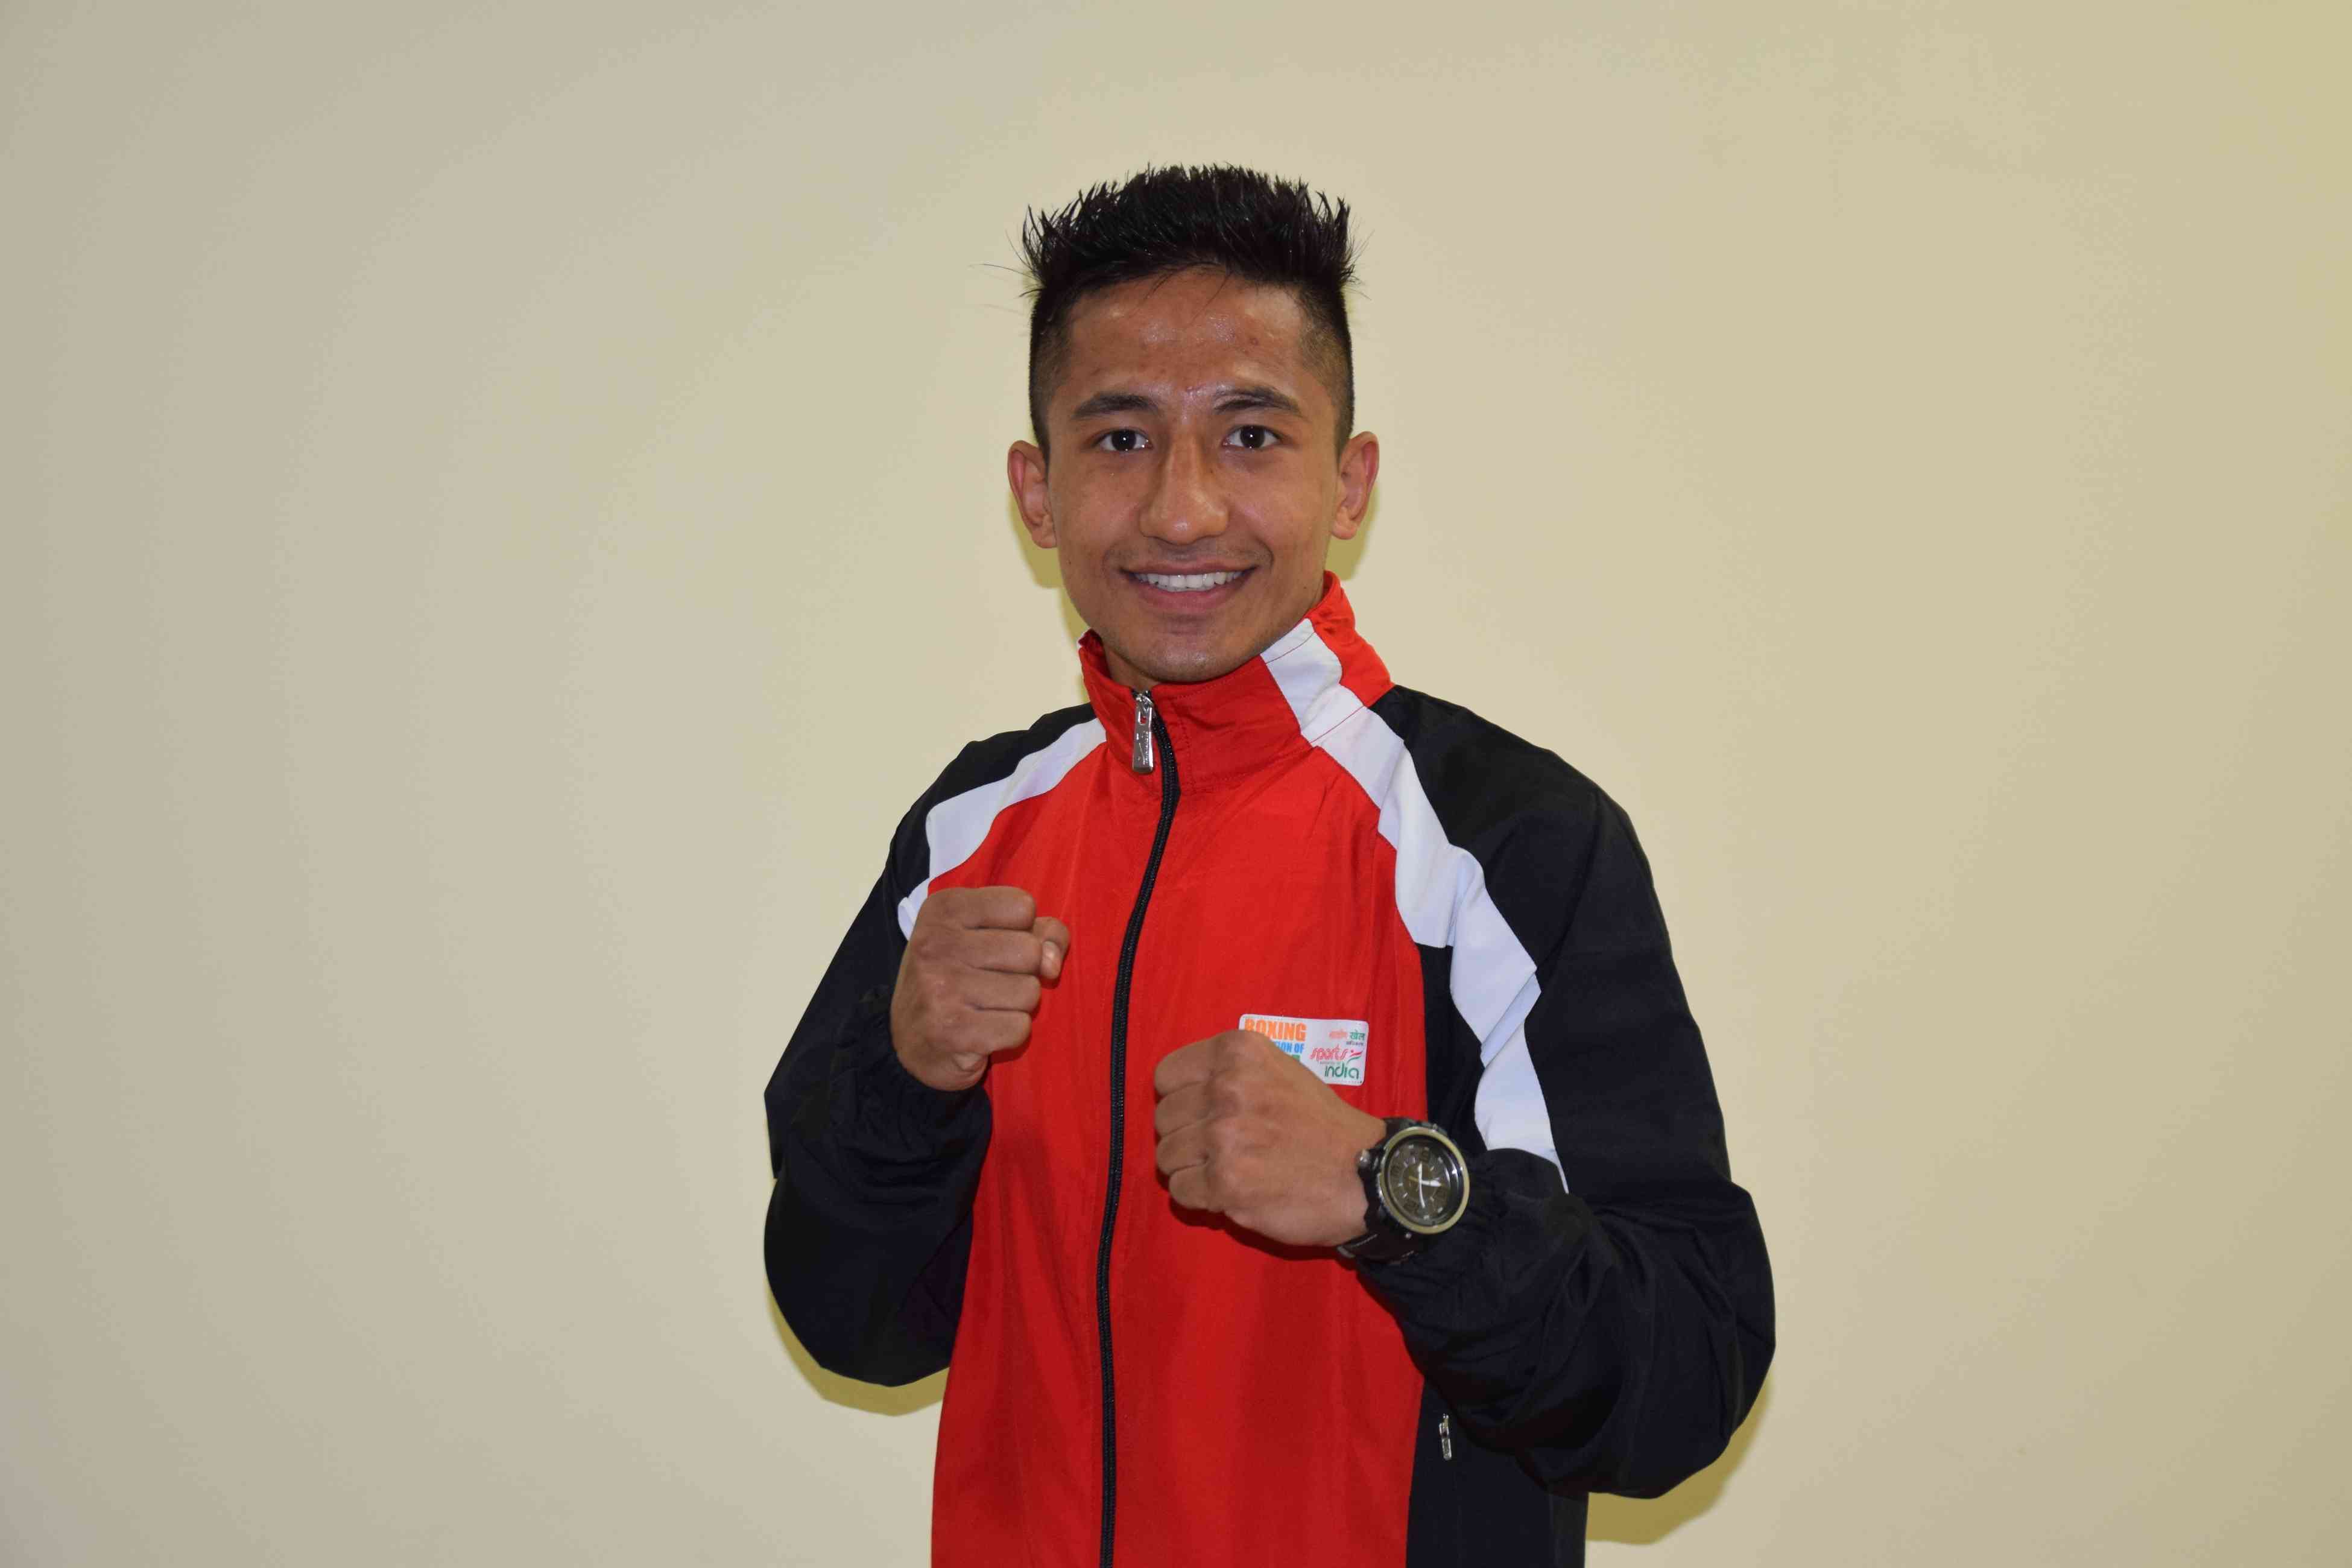 Kavinder Bisht Enter in Quarterfinal. One step far from medal